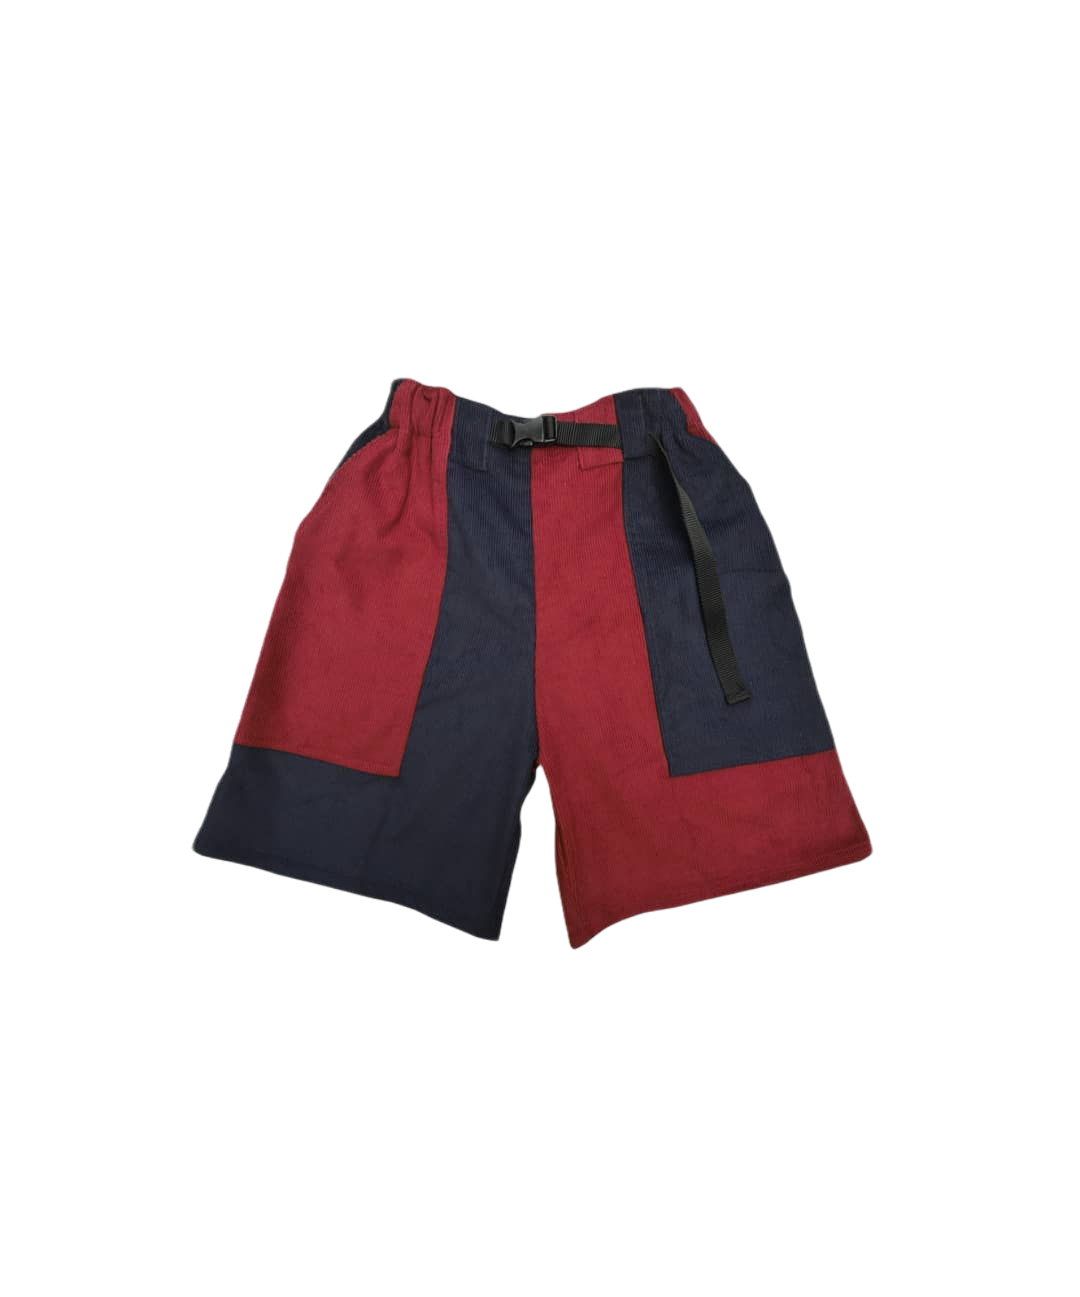 Baggy Corduroy Shorts (Maroon/Navy)